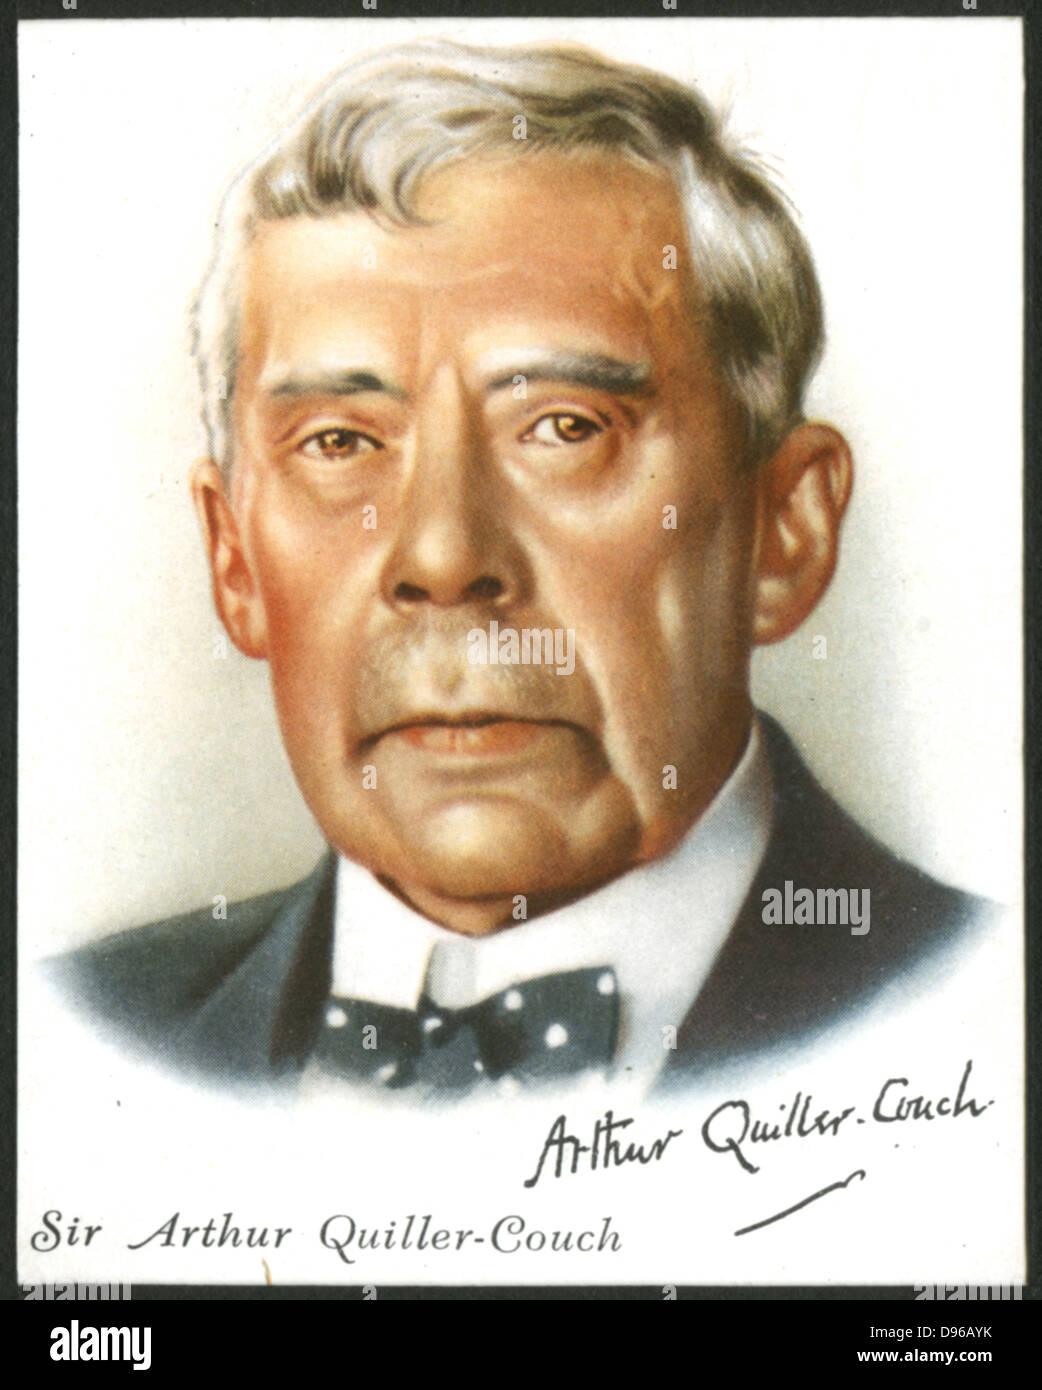 Arthur Quiller-Couch (1863-1944) Englisch Mann der Buchstaben. Professor für englische Literatur an der Cambridge von 1912. Karte veröffentlicht 1912. Stockfoto